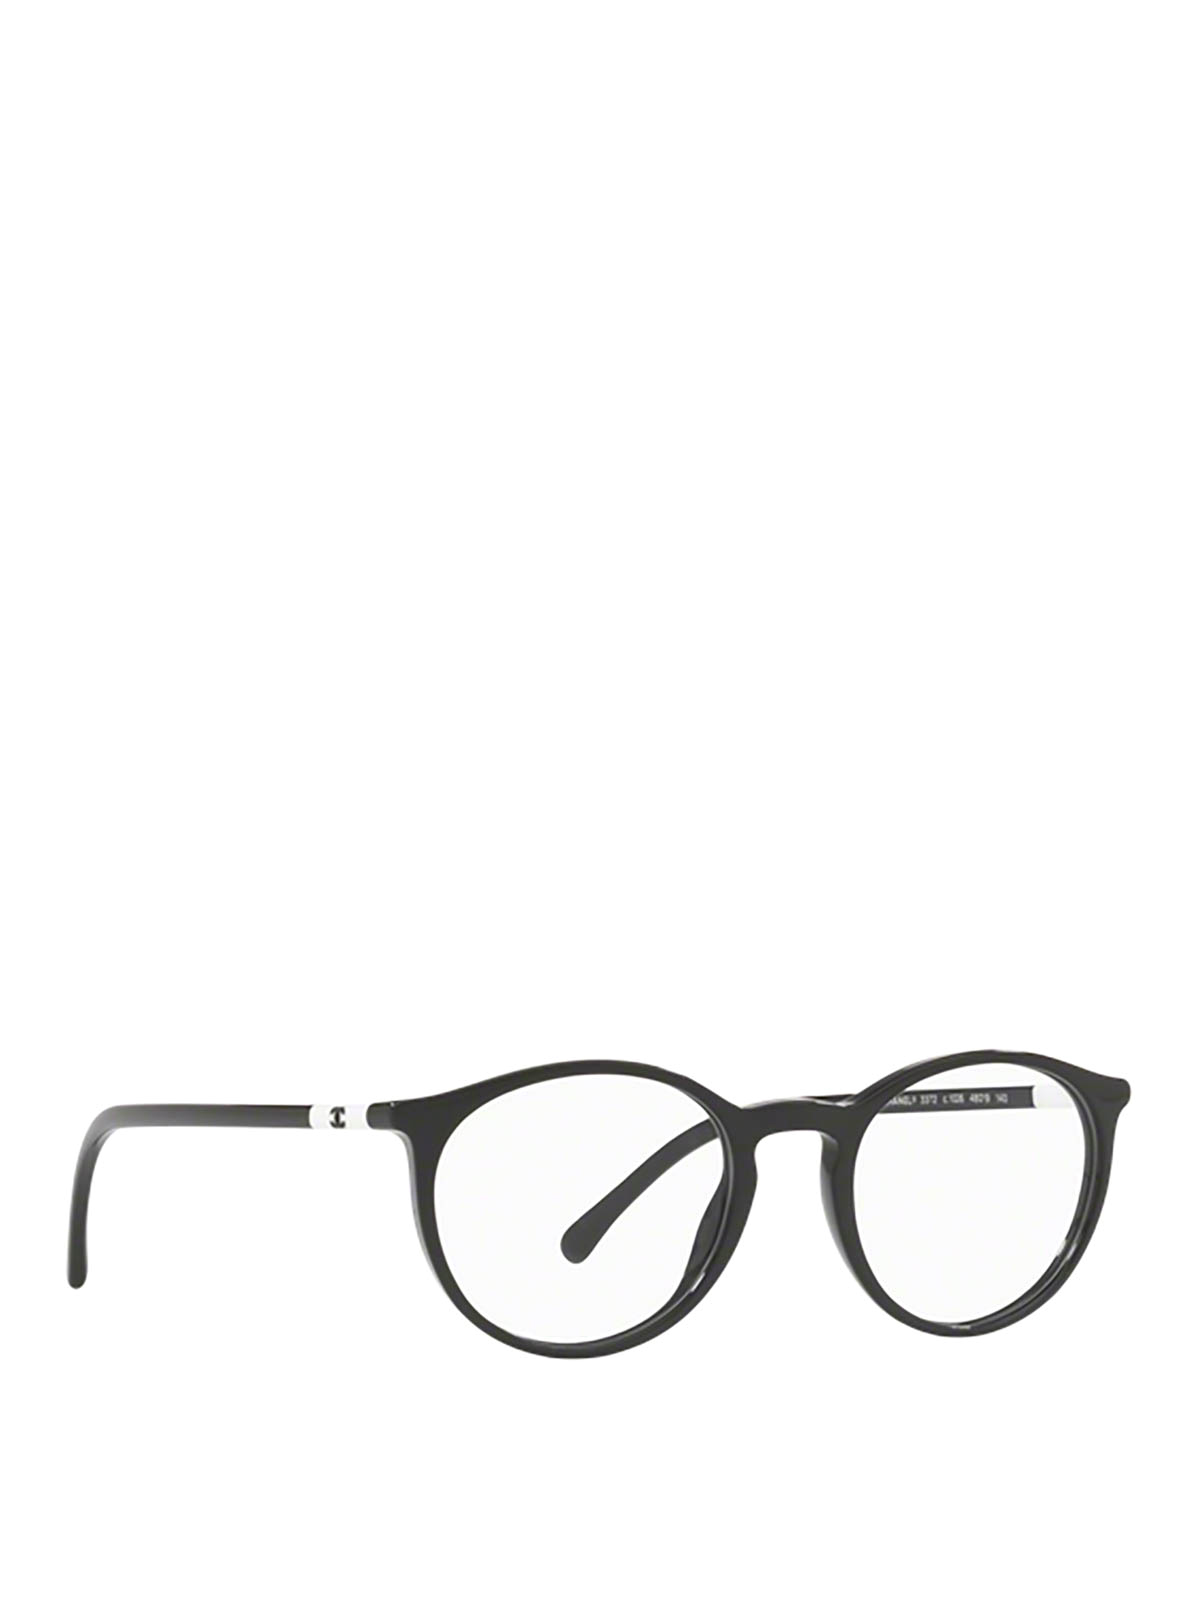 Slender acetate frame round optical glasses